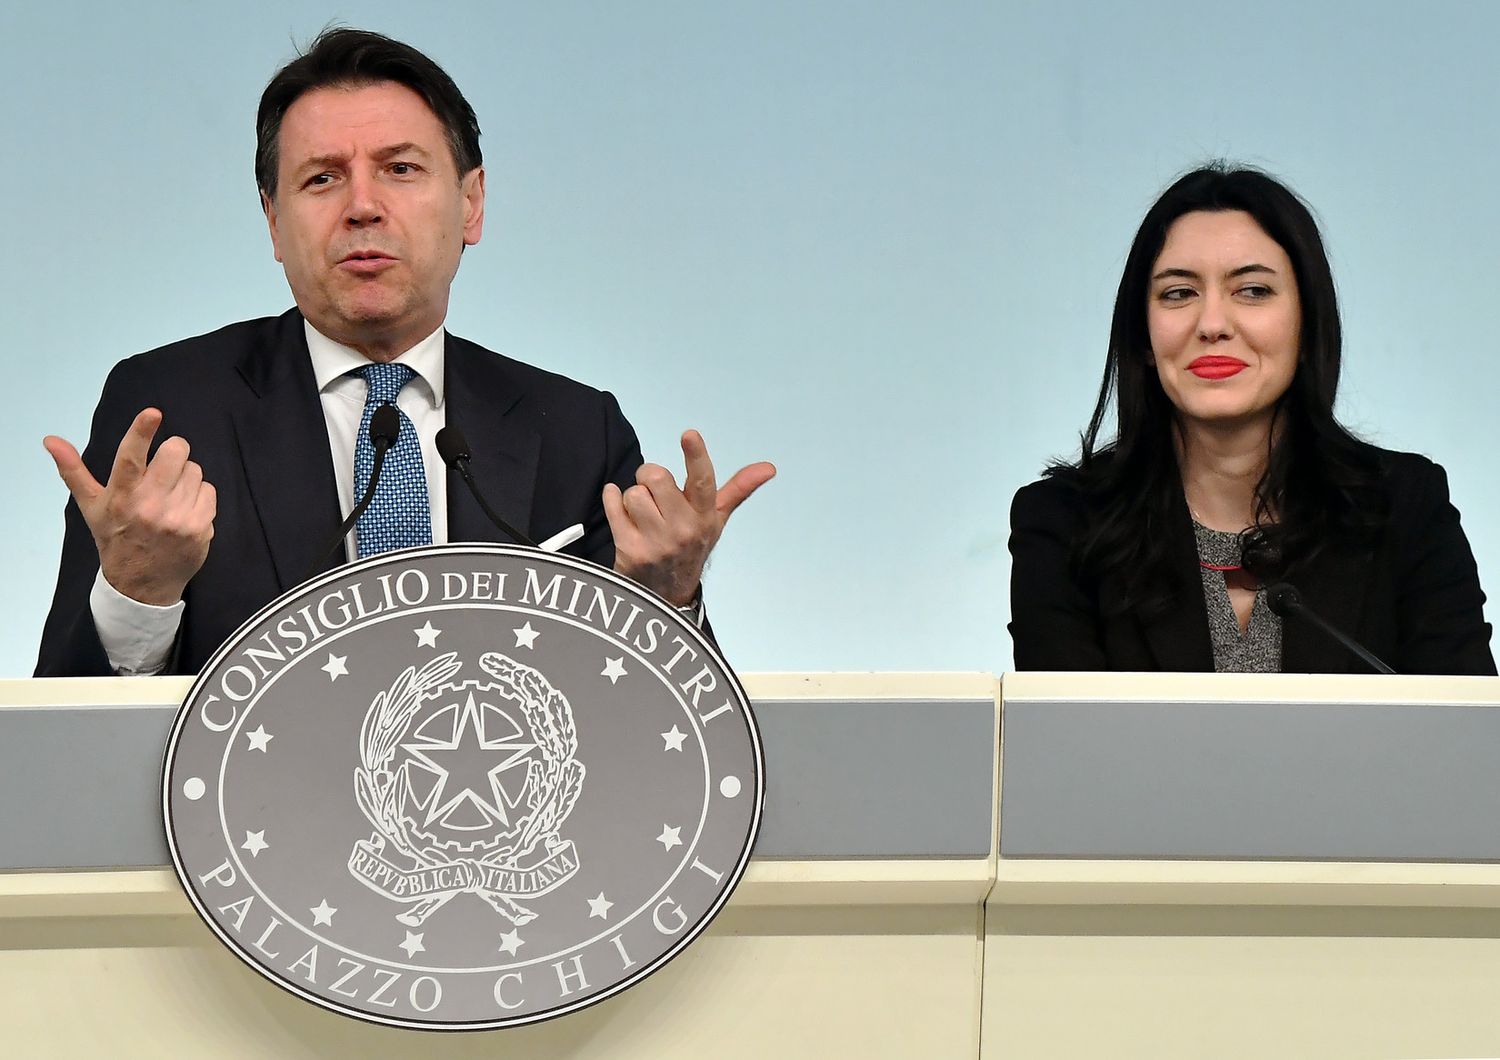 Giuseppe Conte e Lucia Azzolina&nbsp;